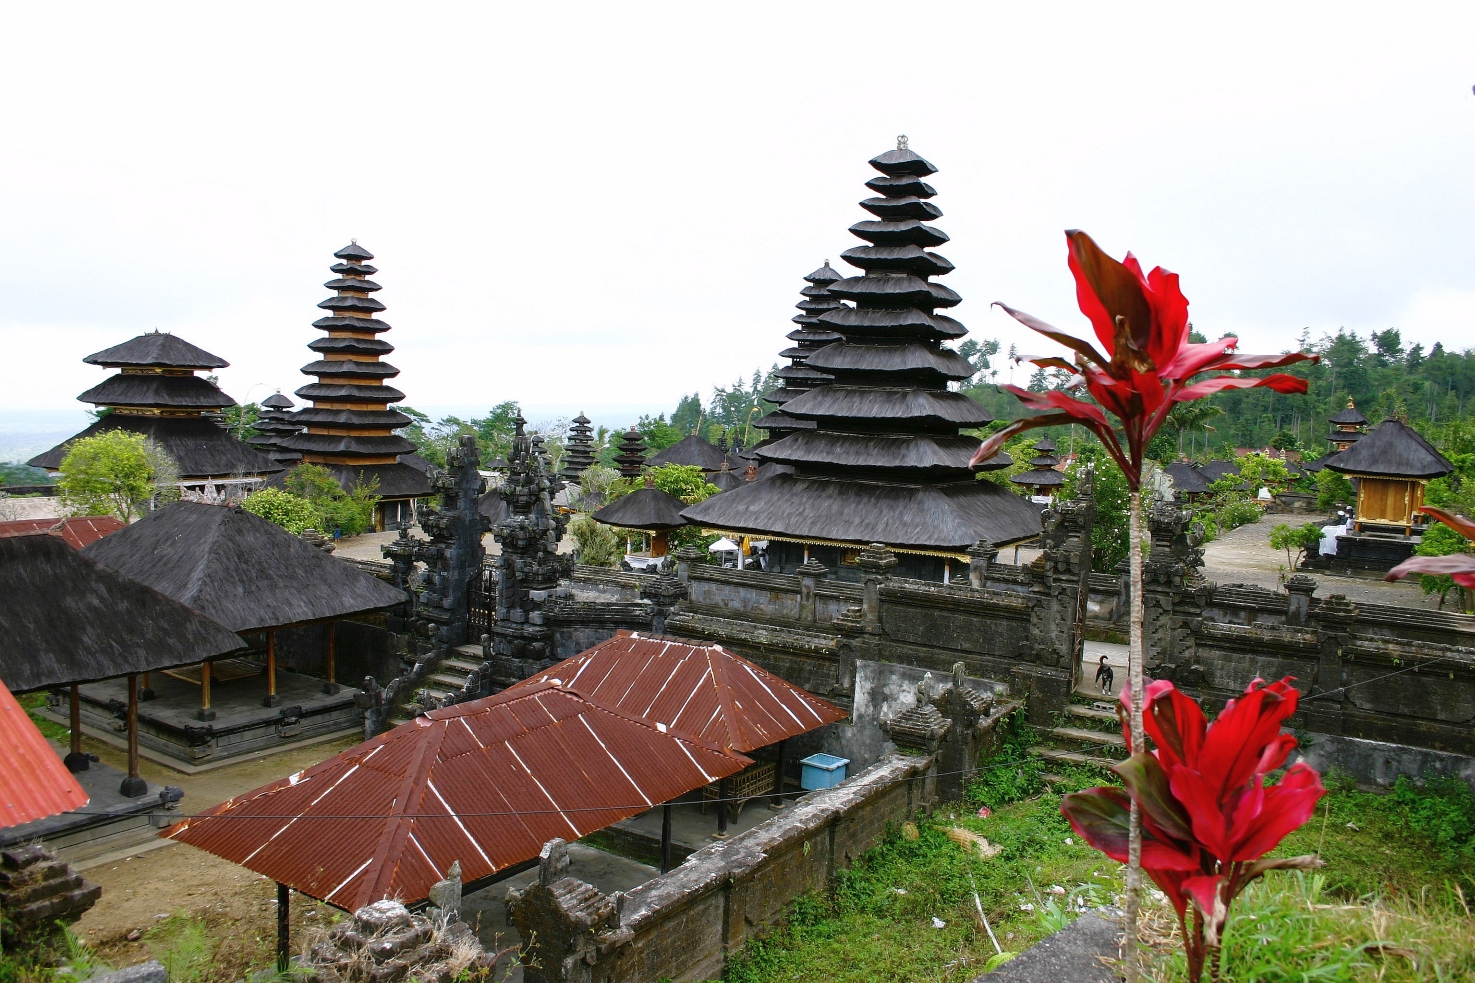 Temple hindouiste - Besakih -Pura Besakih - Bali - Indonésie.